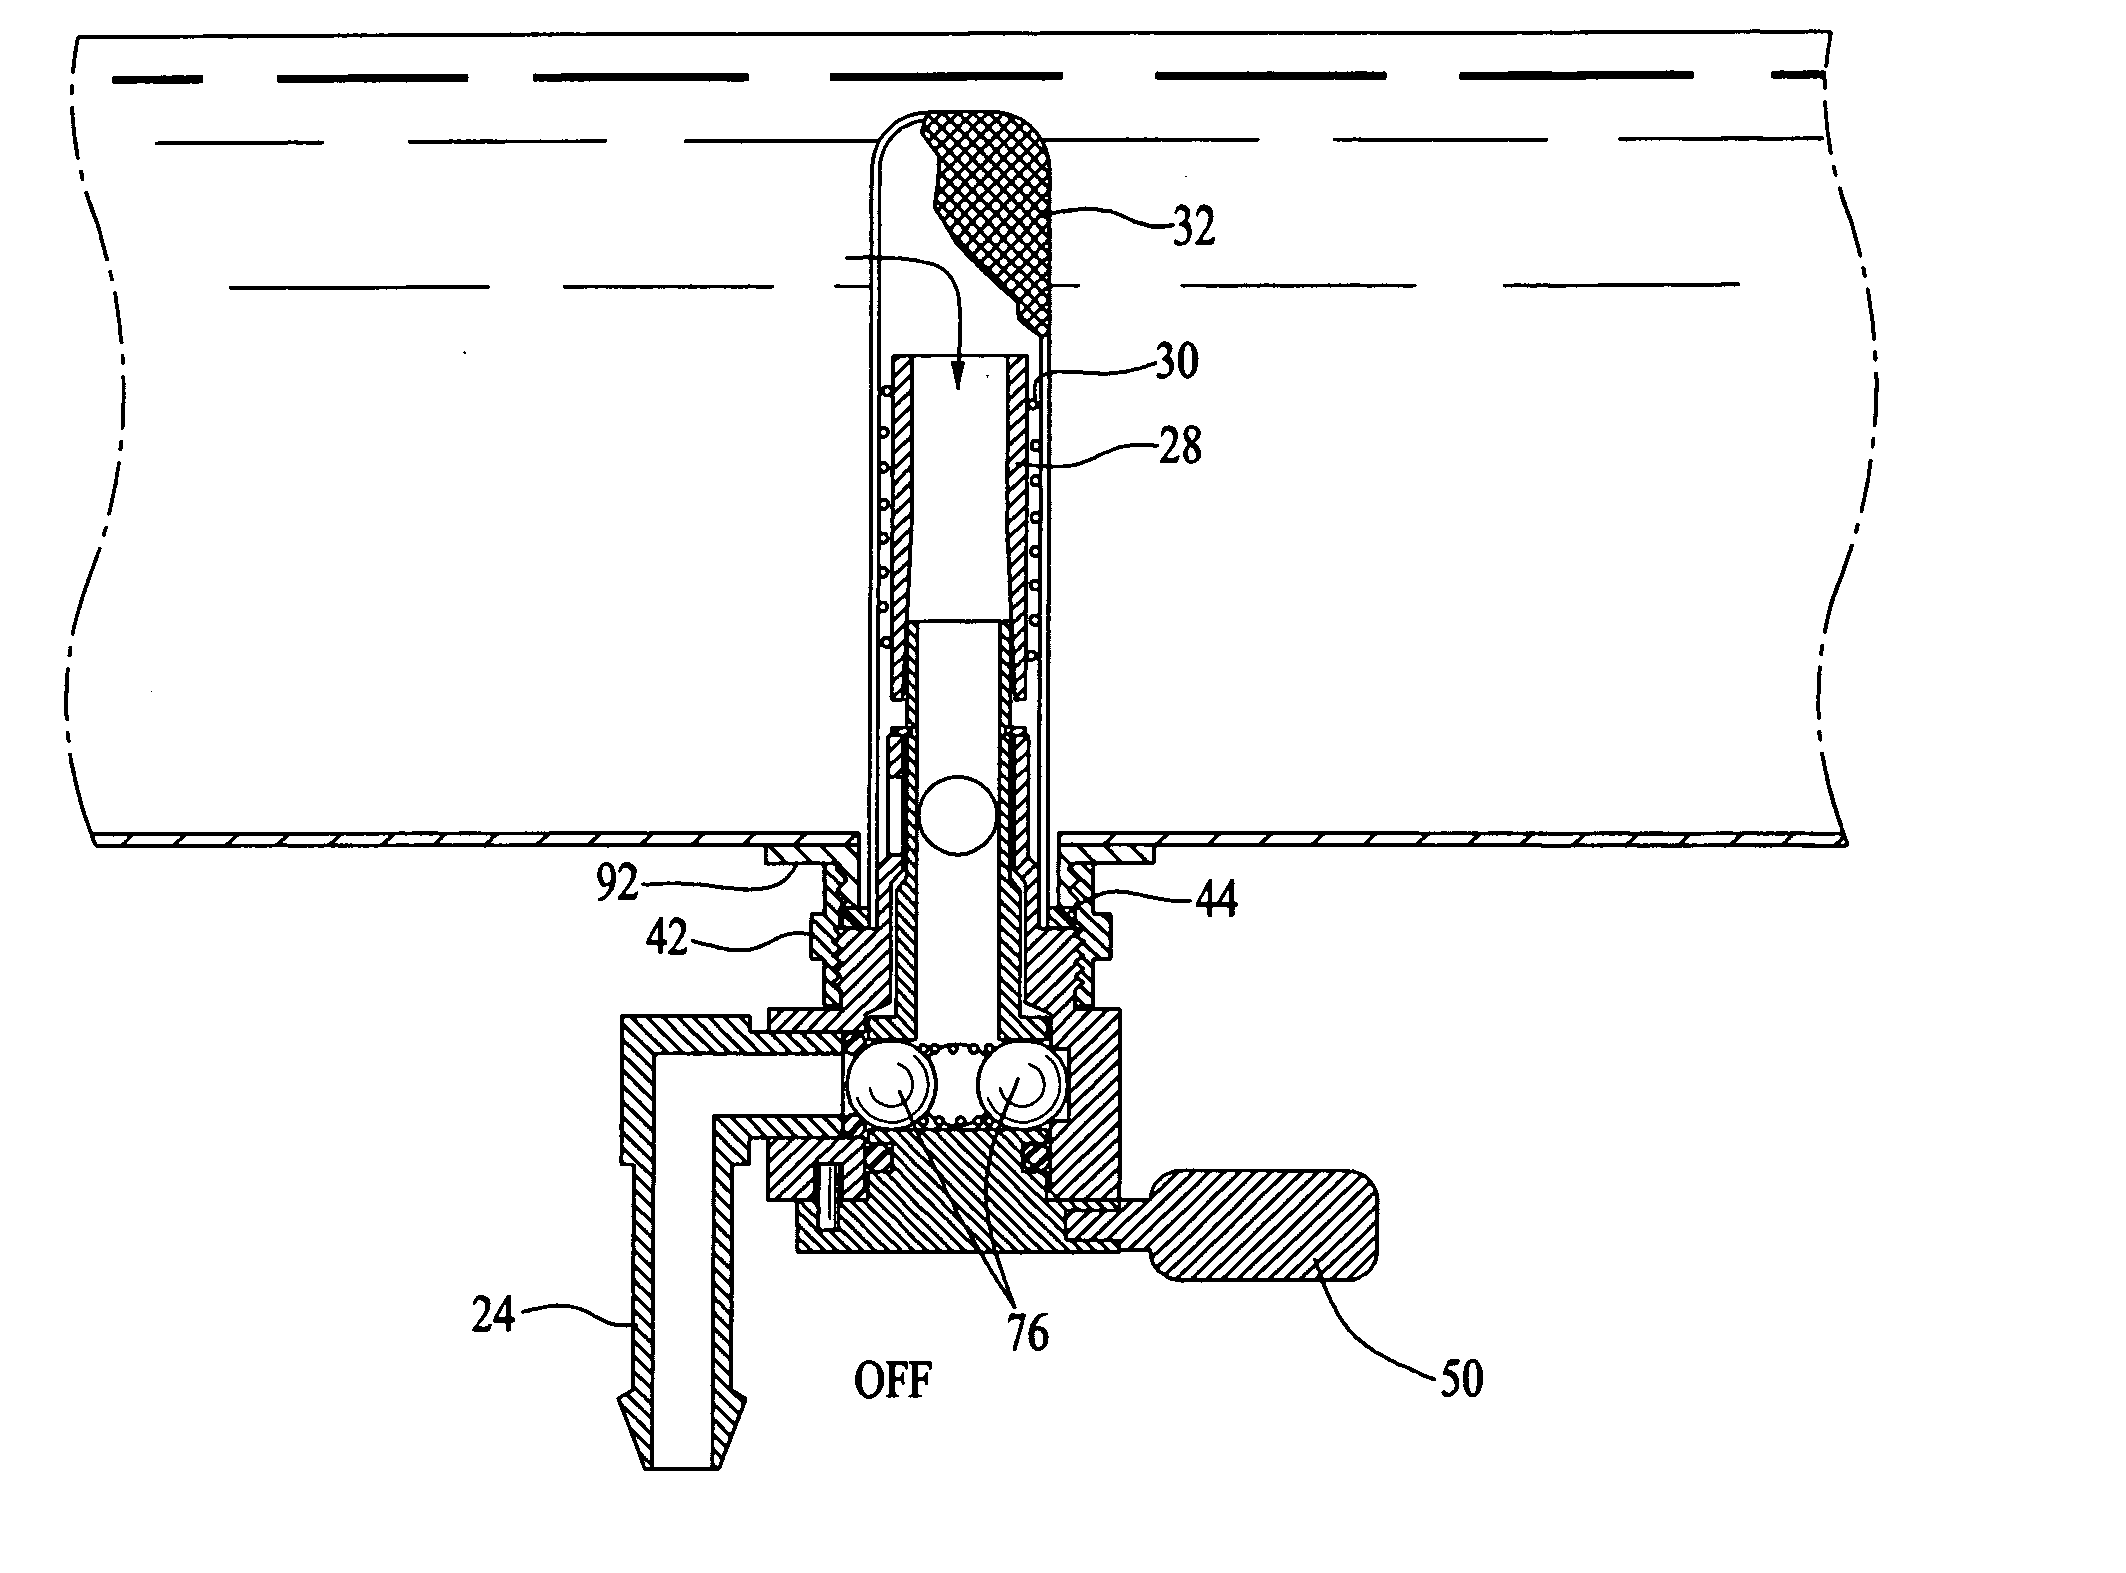 Multiple-mode fluid valve